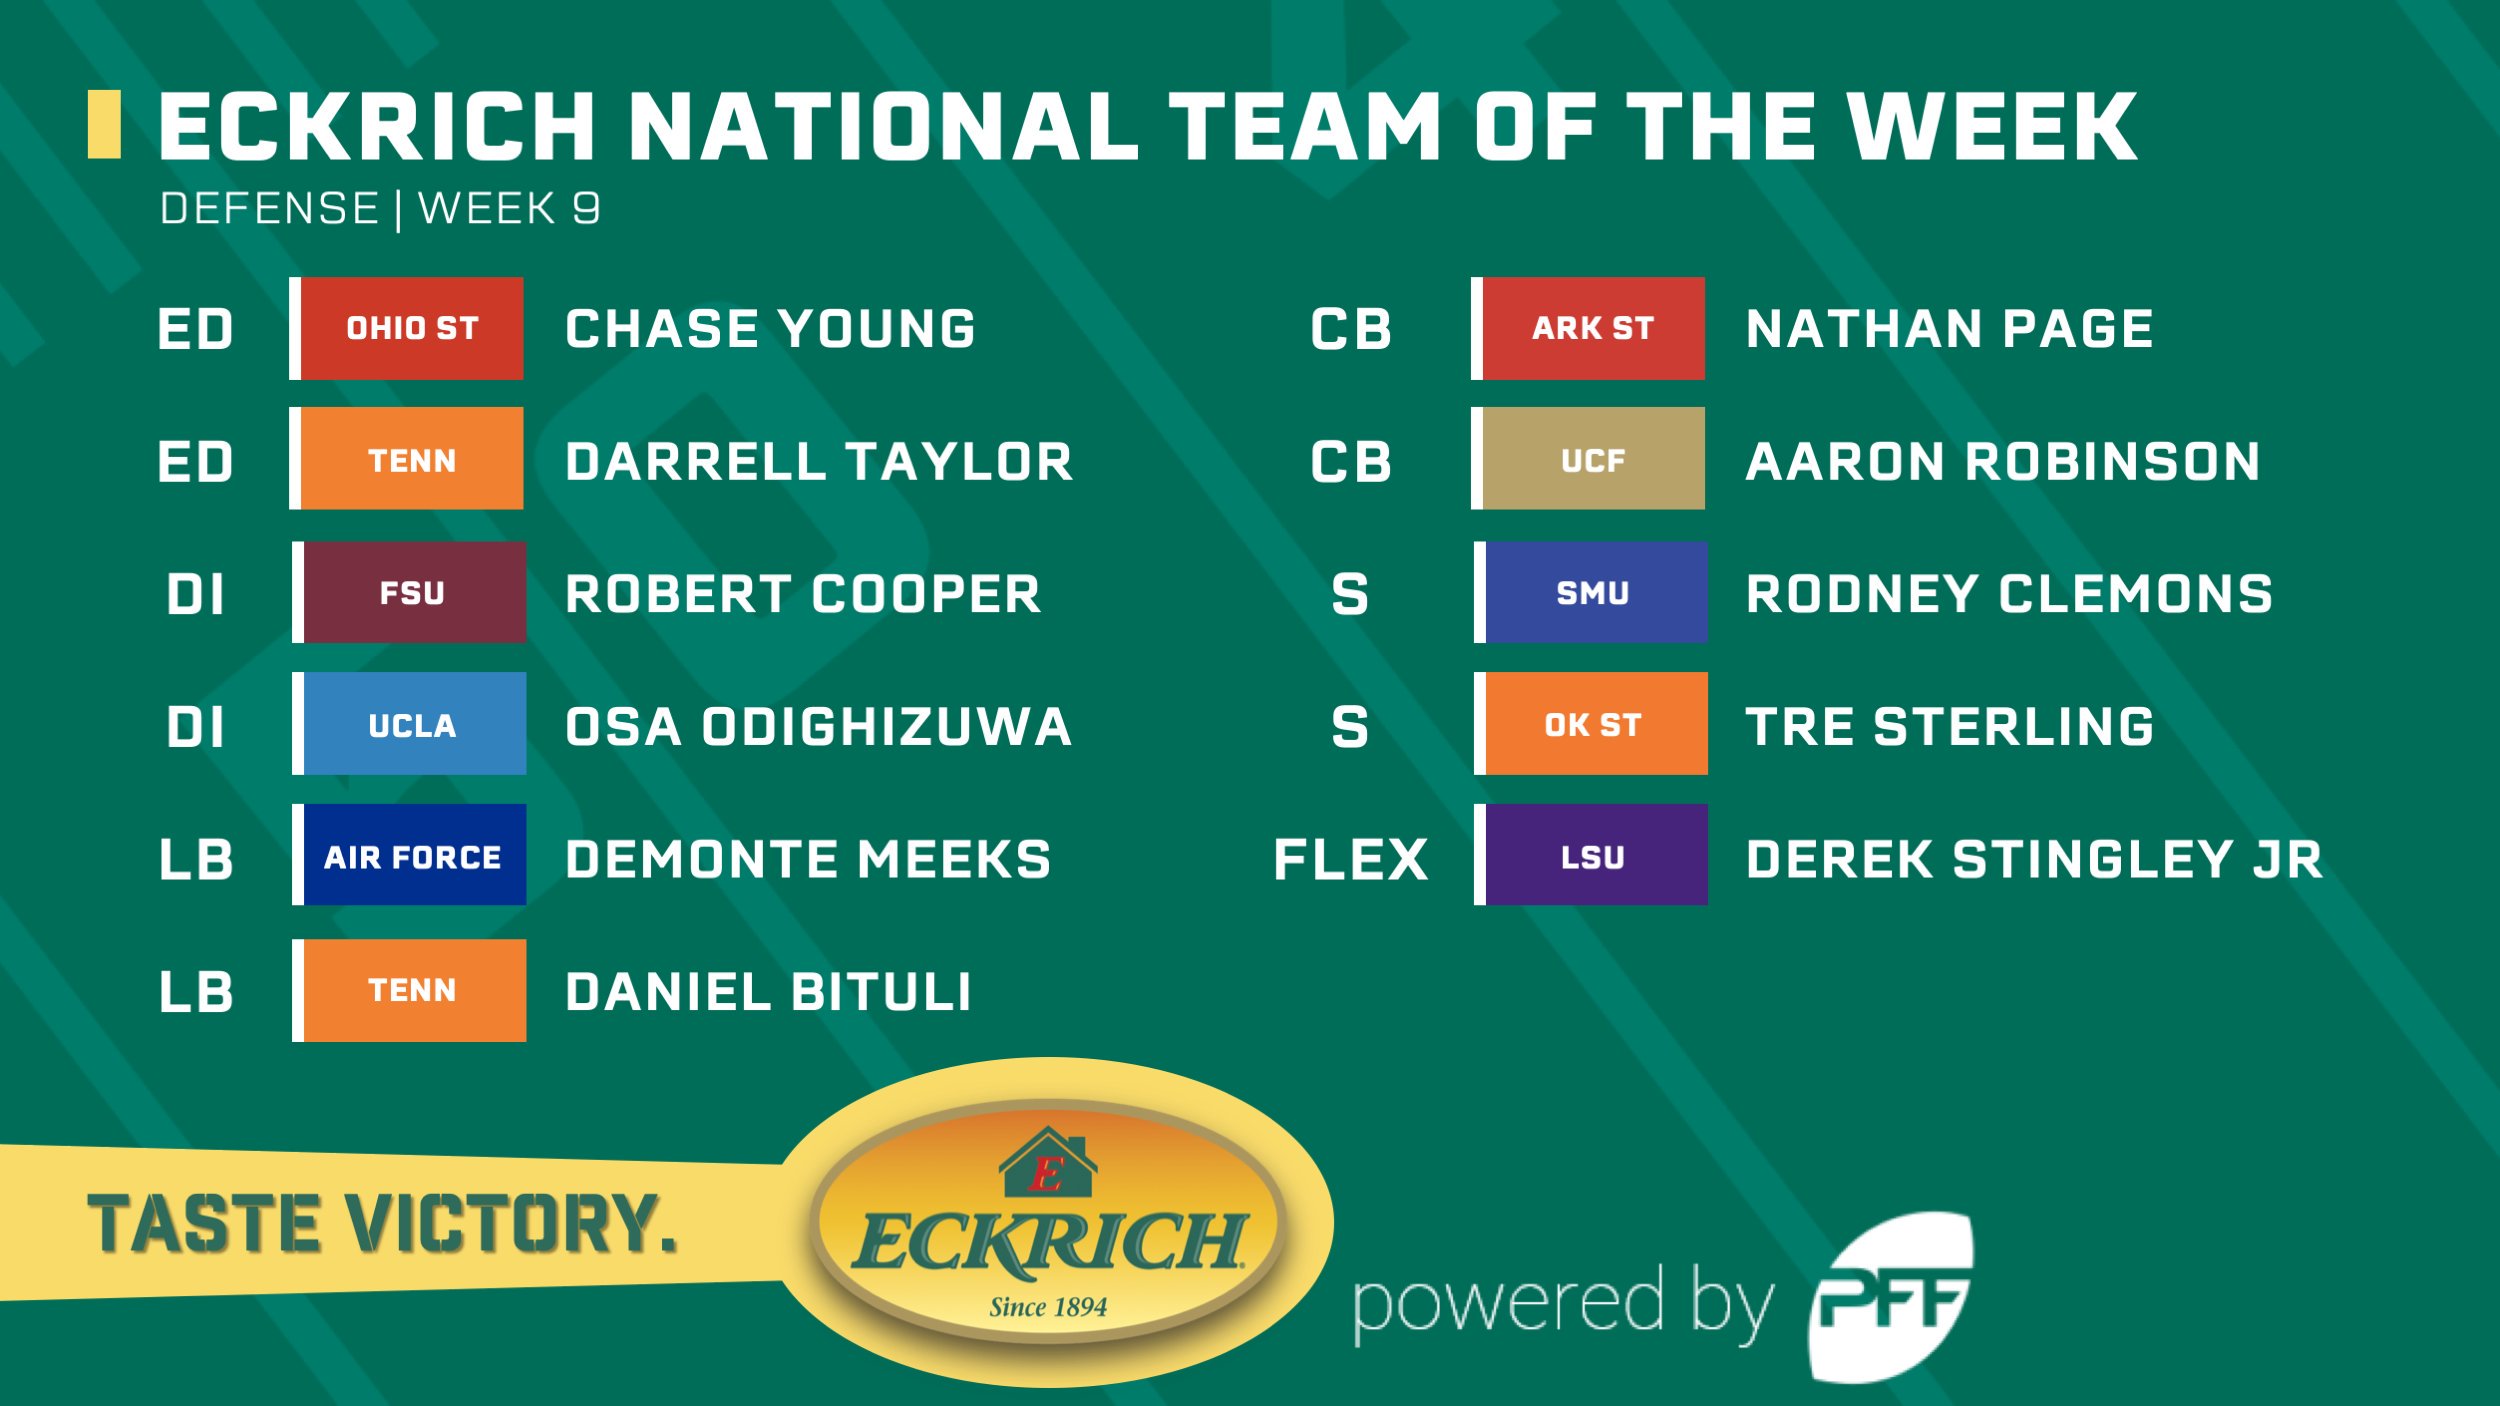 College Football Week 1 Eckrich Team of the Week, NFL Draft